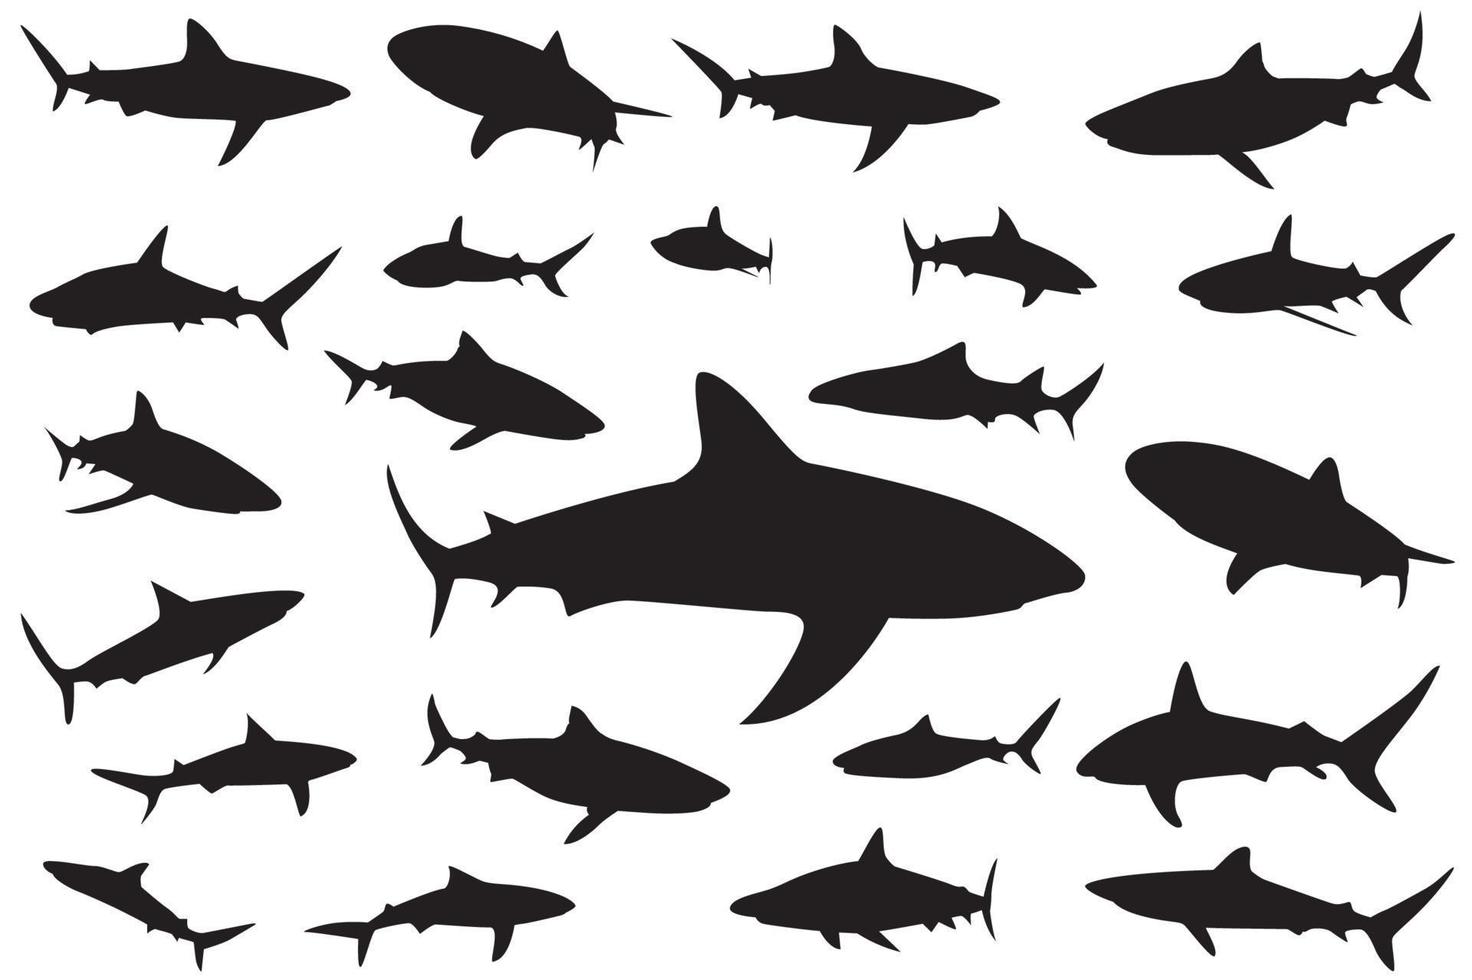 silueta de tiburón, conjunto de tiburones. colección de siluetas de peces marinos nadadores depredadores vector